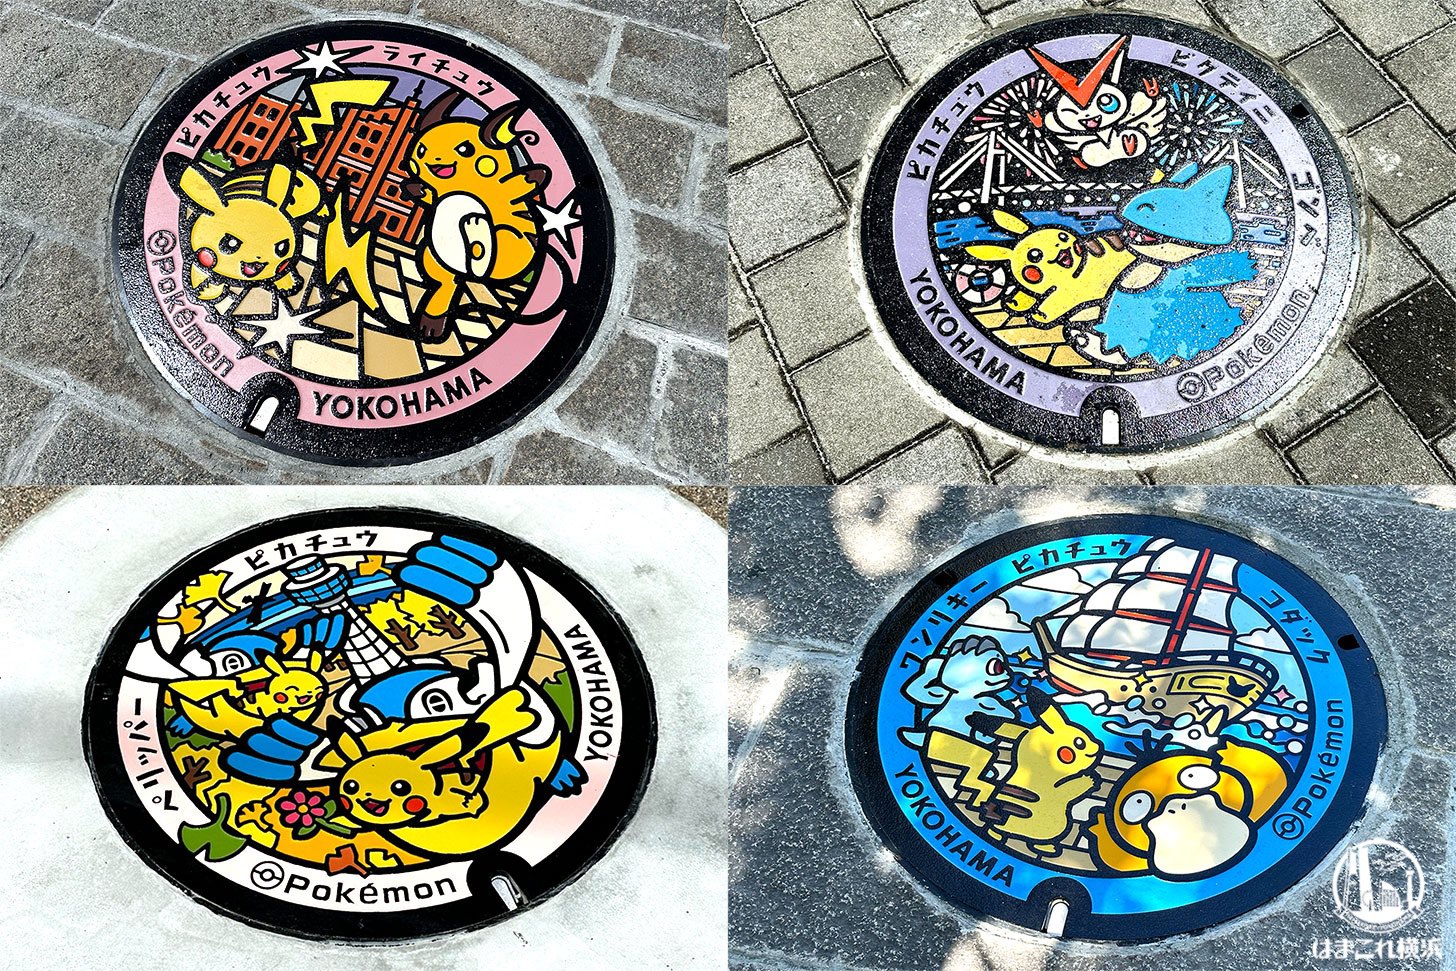 横浜のポケモンマンホール「ポケふた」新たな4基をゲット！ピカチュウ×観光スポットのデザイン可愛い